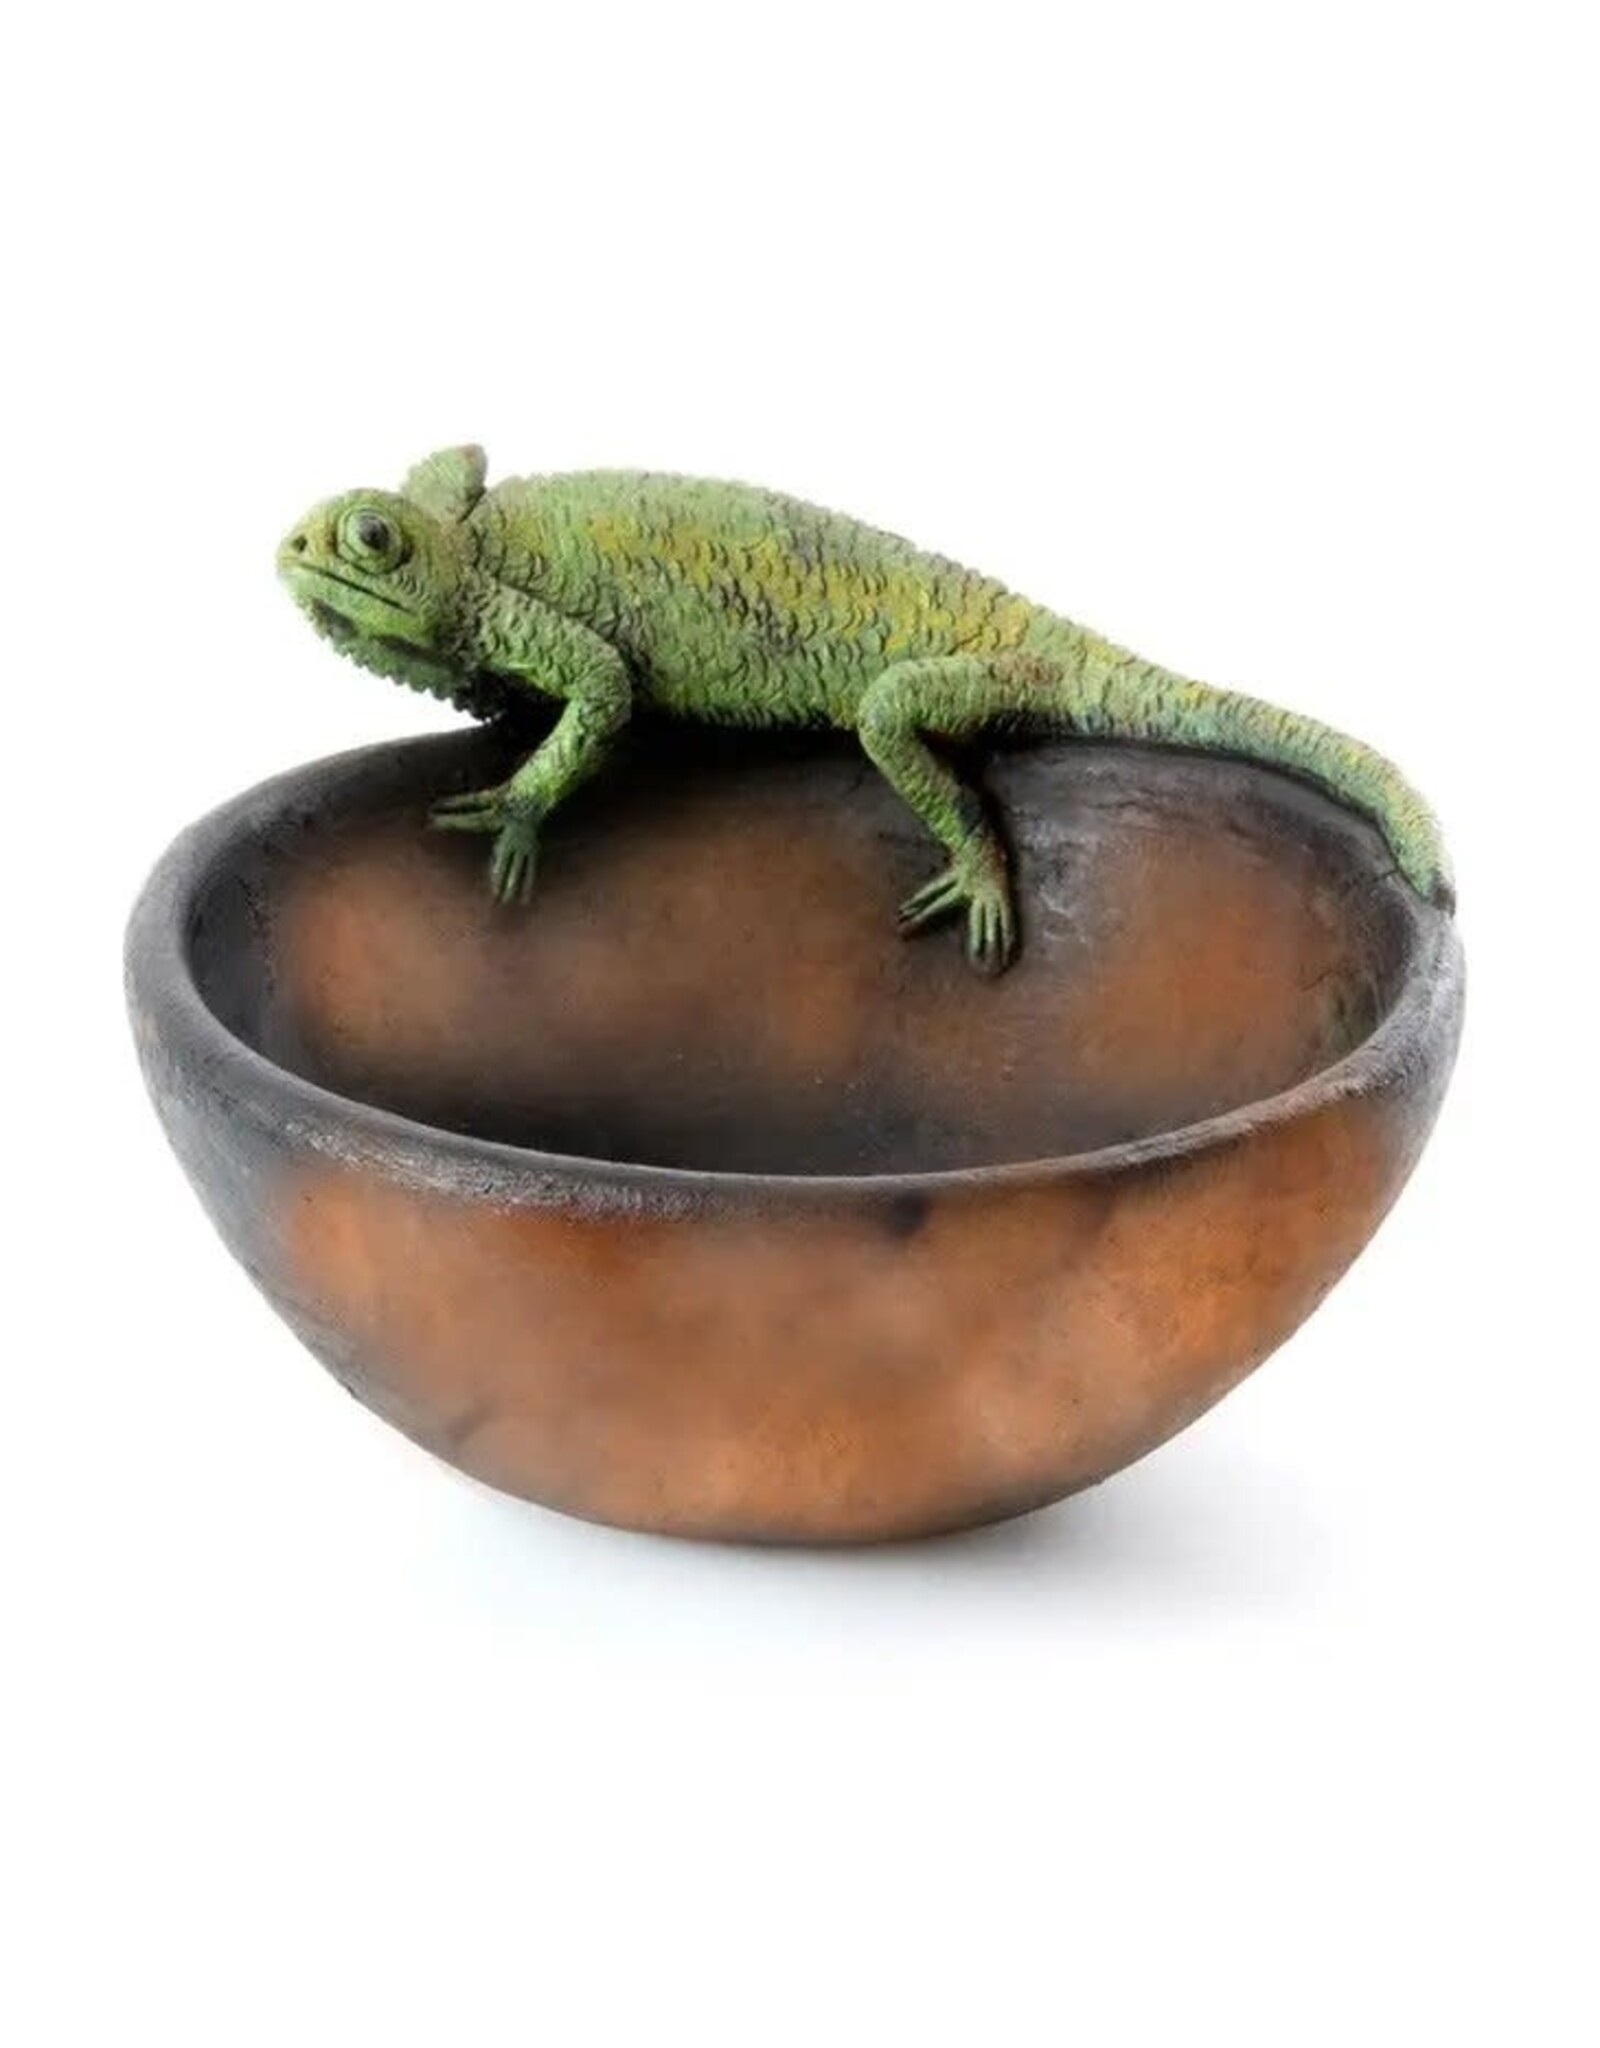 Kenyan Chameleon Ceramic Bowl, Kenya